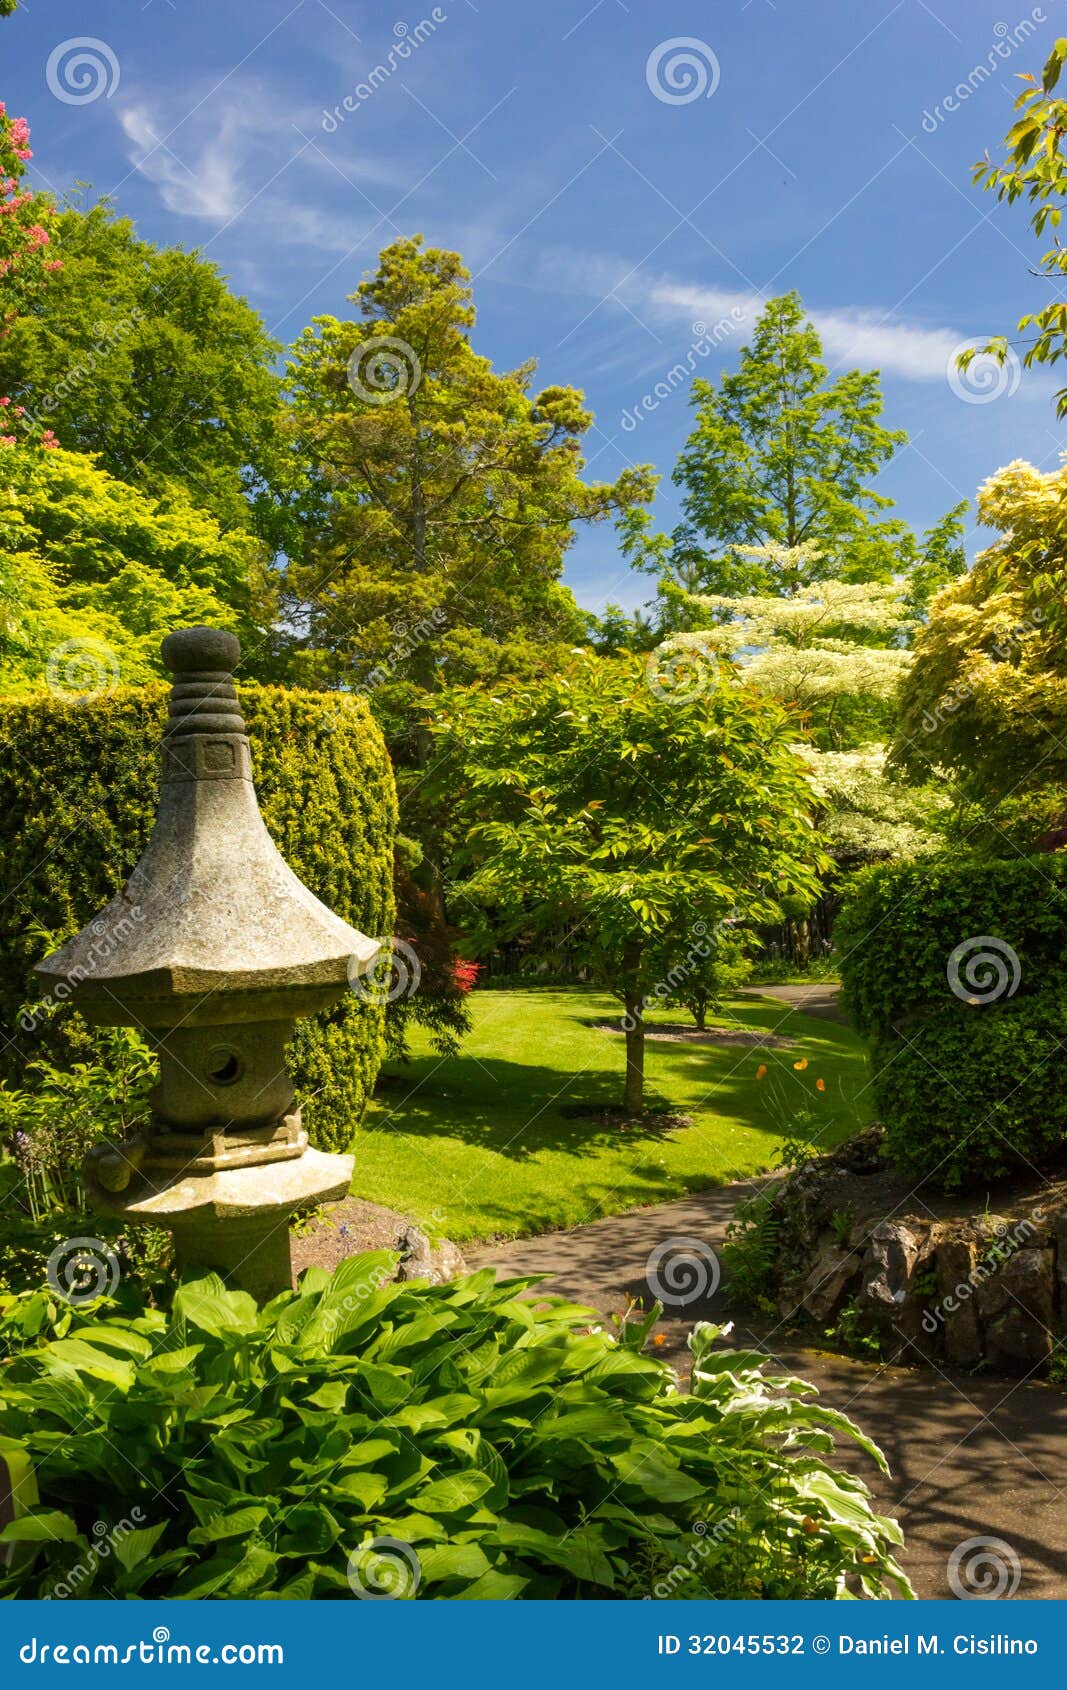 irish national stud's japanese gardens. kildare. ireland